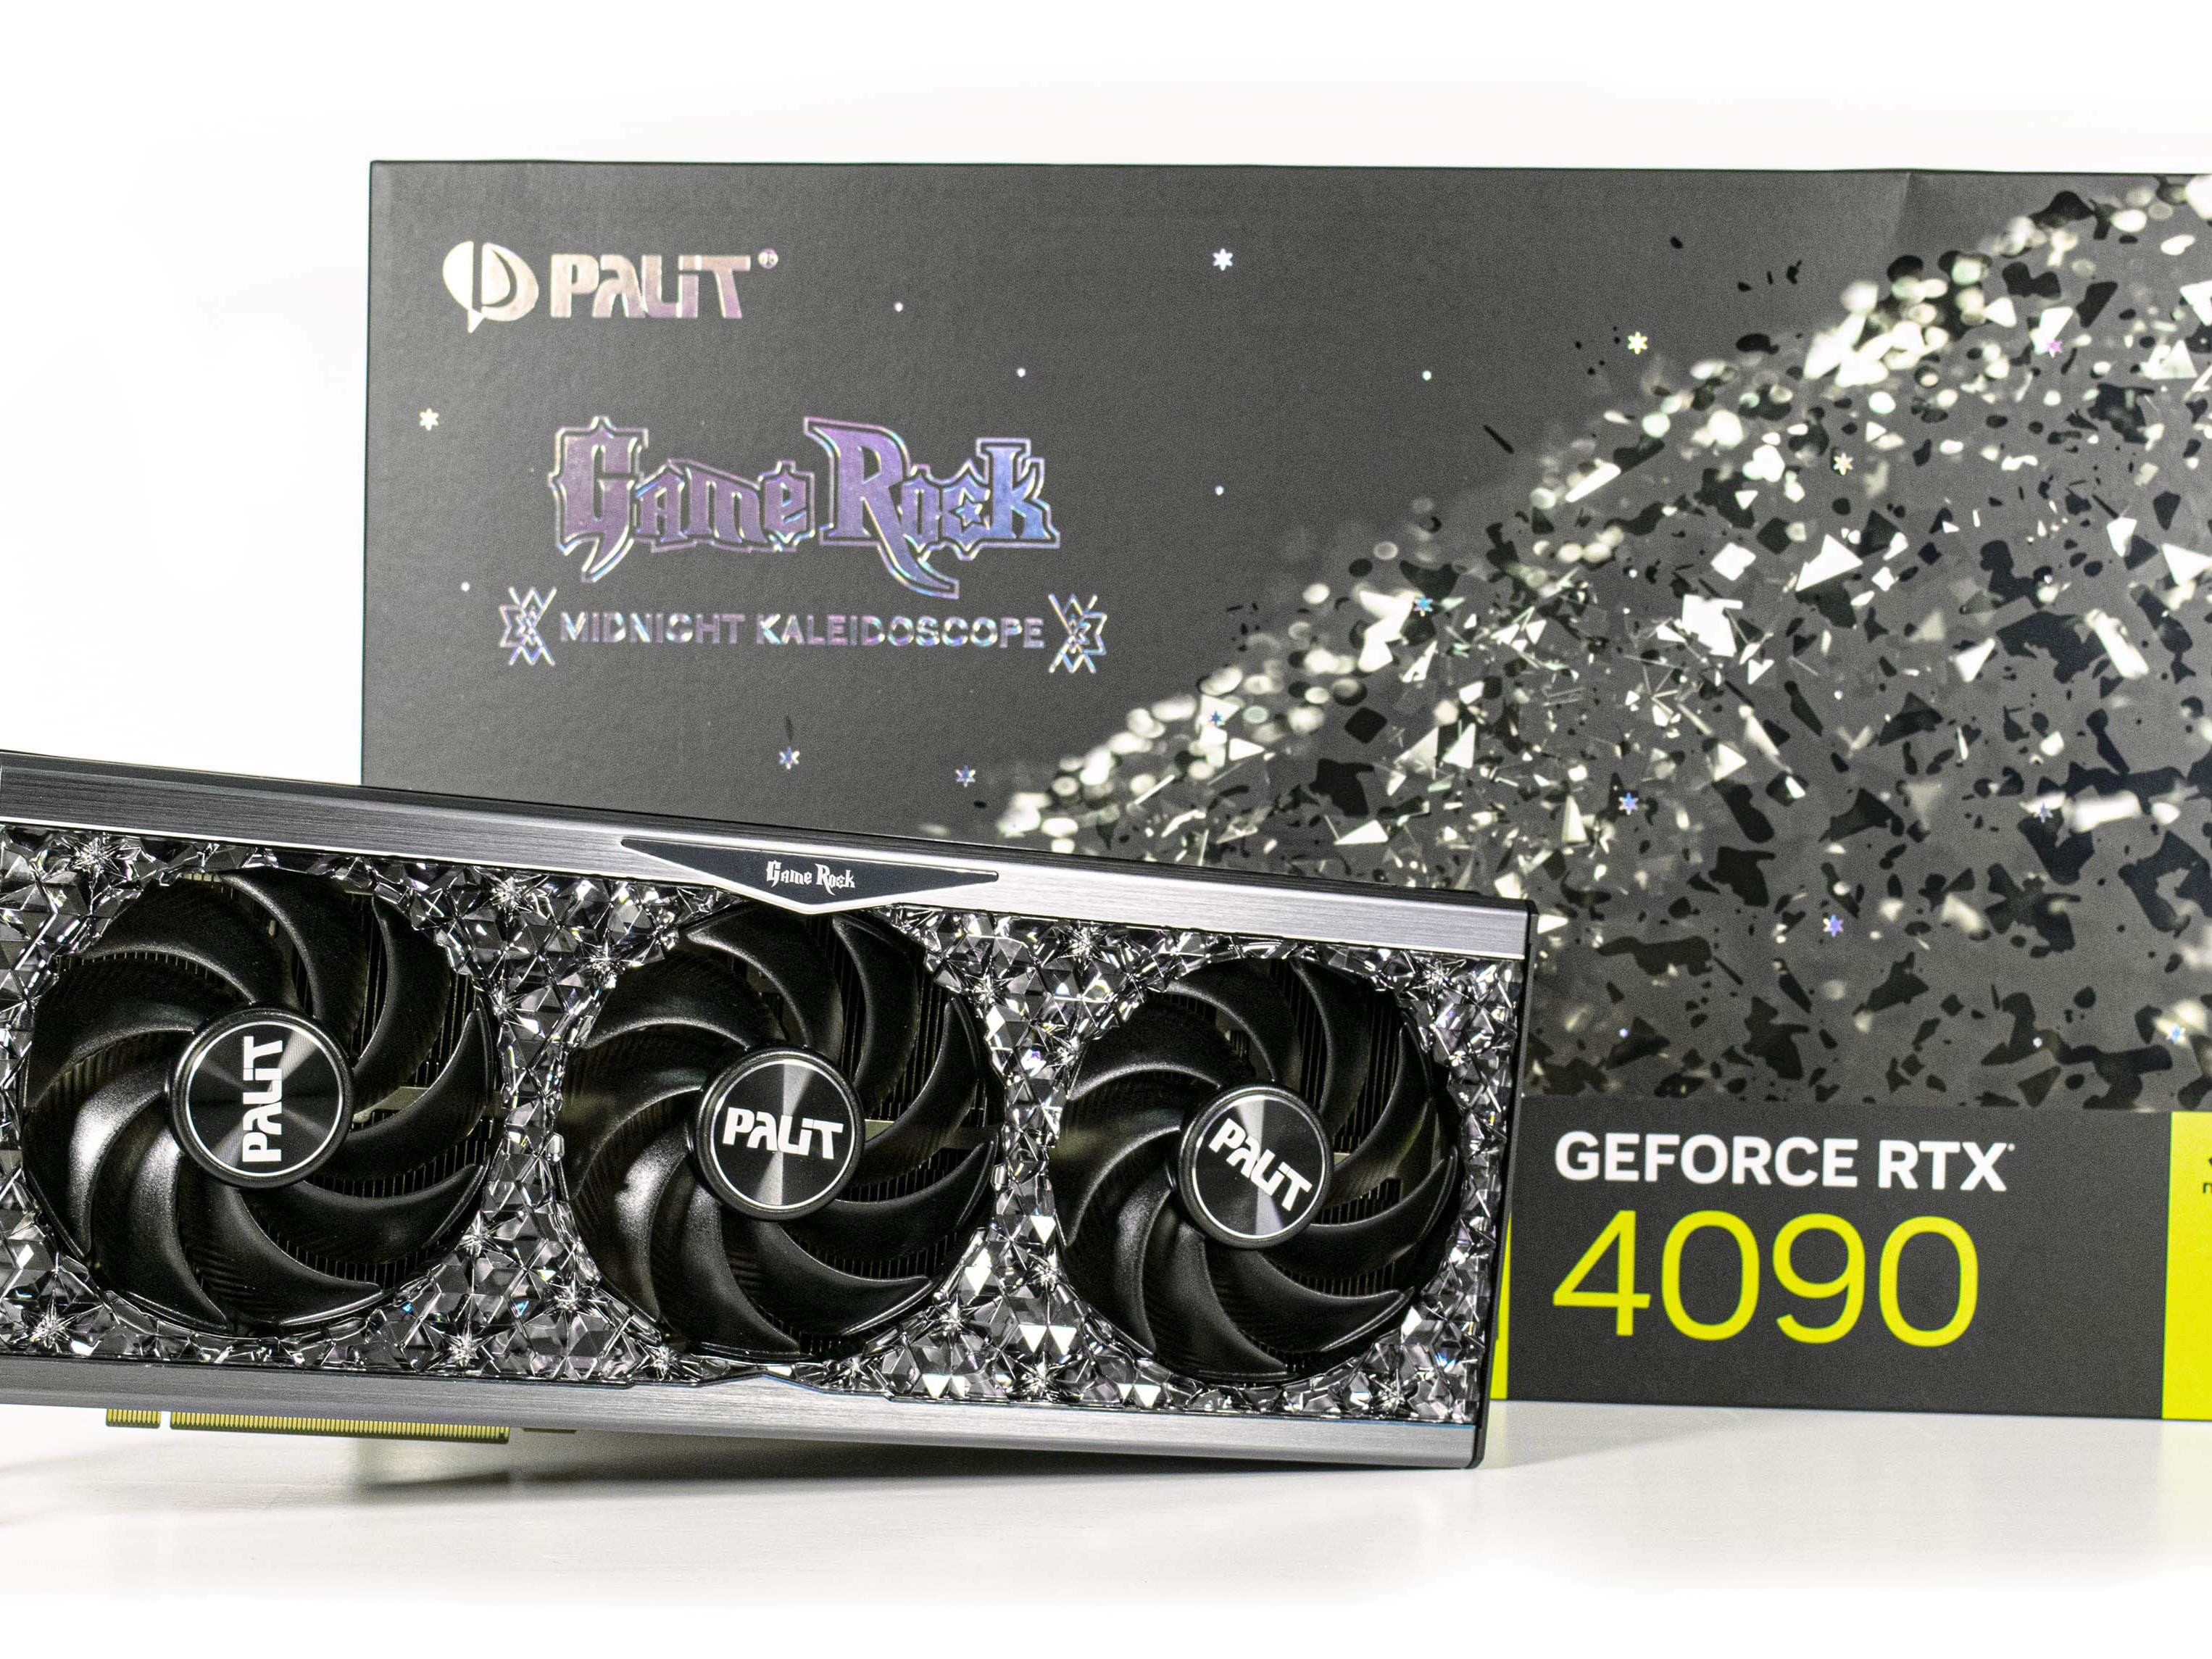 Revizuire a GPU-ului Palit GeForce RTX 4090 GameRock OC Desktop: performanță de vârf la un preț accesibil